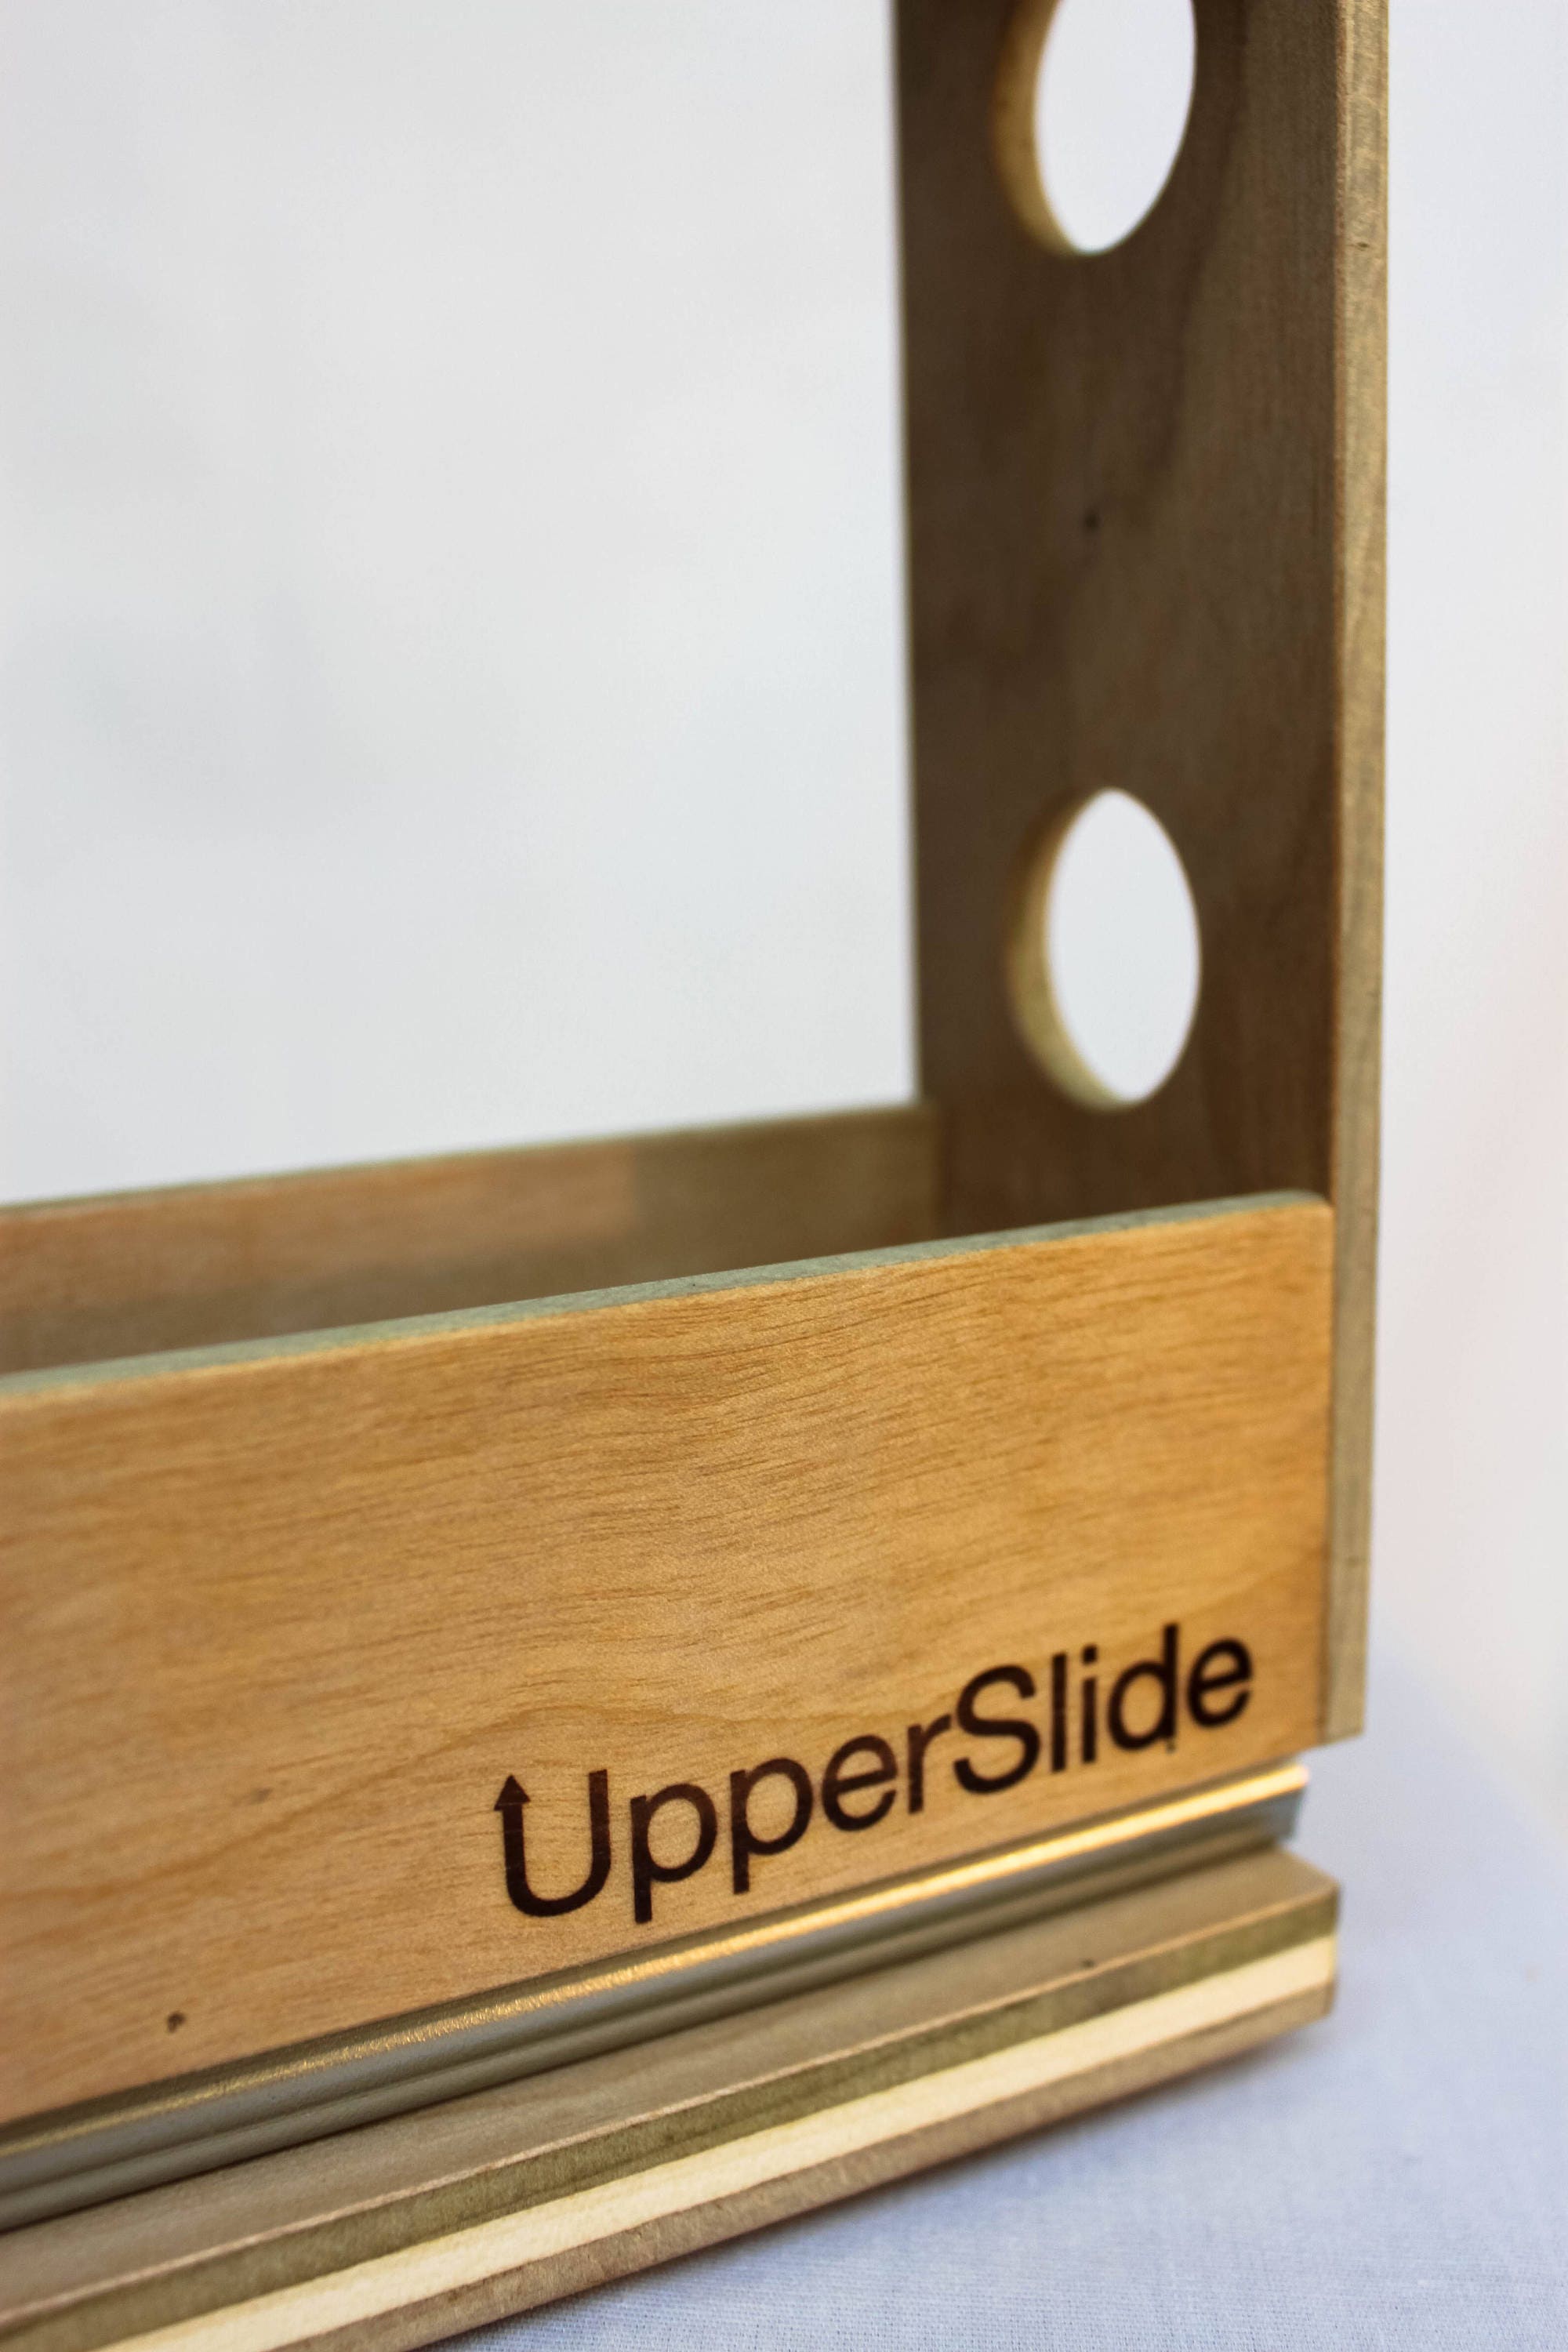 Upperslide Cabinet Caddies Spice Rack Starter/Expansion Pack #1 (US  303SEP1)